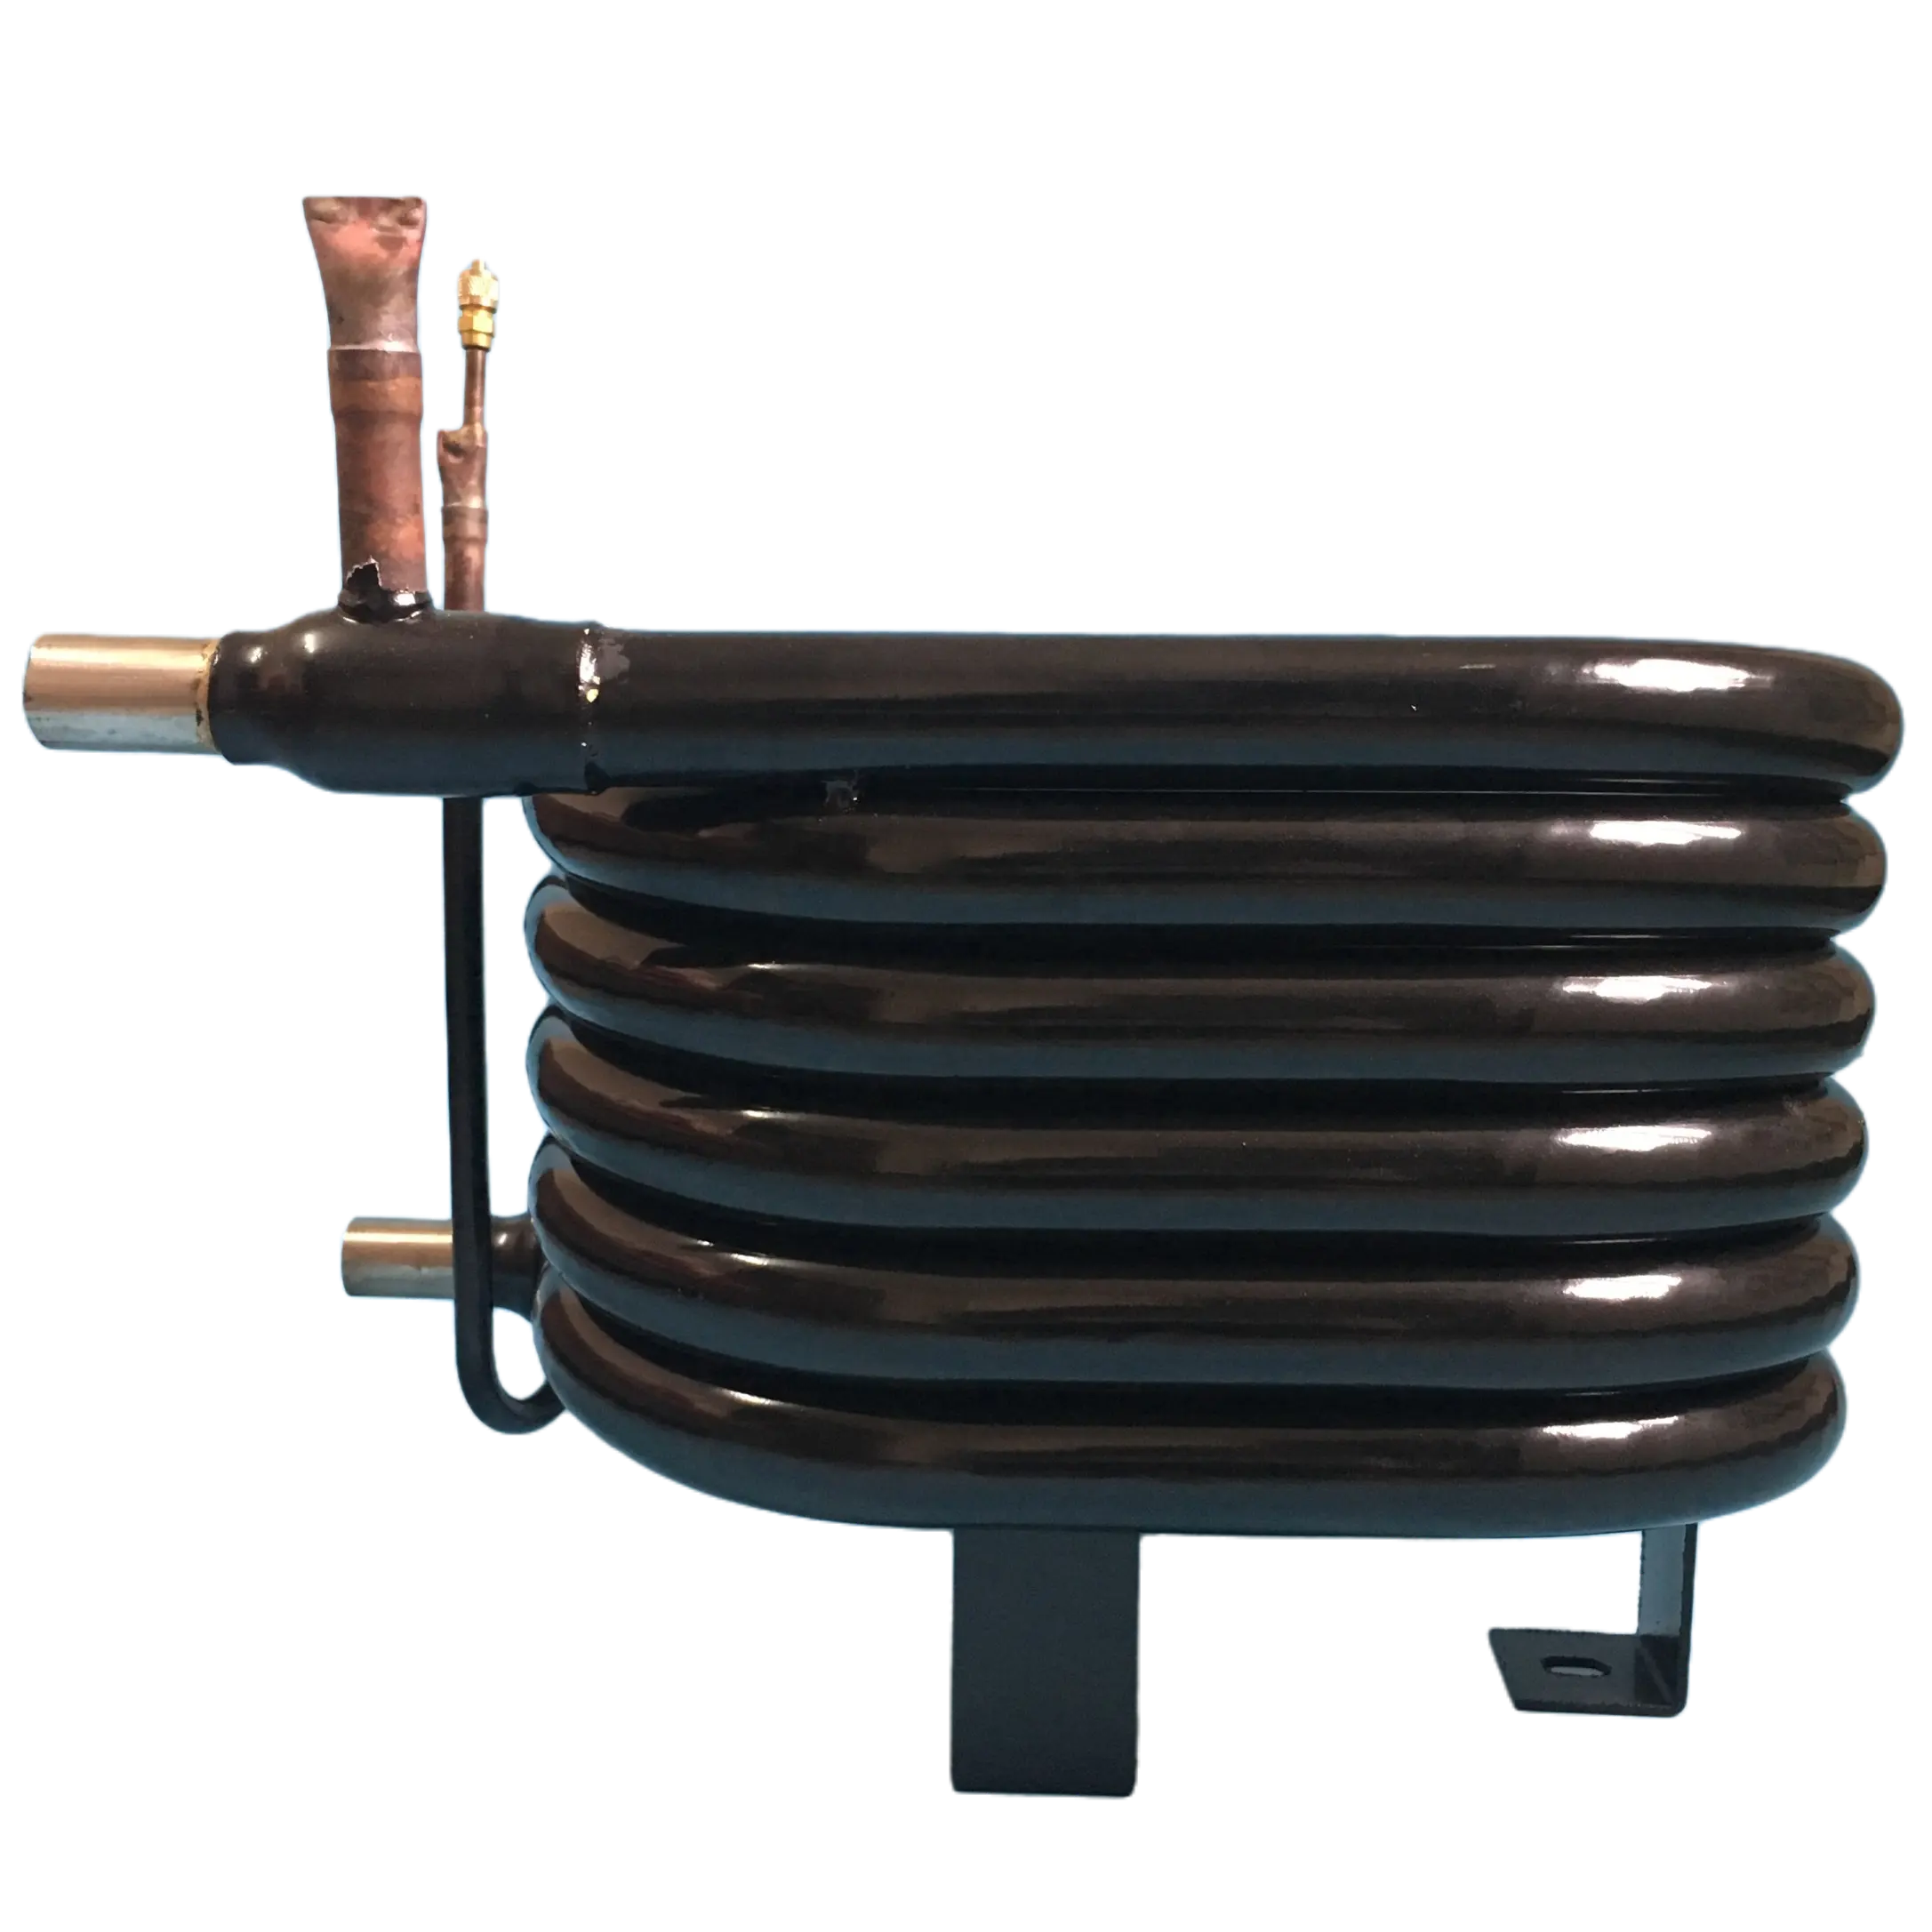 Kunden spezifisches Rohr Werkseitige HLK-Ausrüstung Wärmepumpe verwendet Doppelspiral-Wellspiral-Koaxialspulen-Wärme tauscher